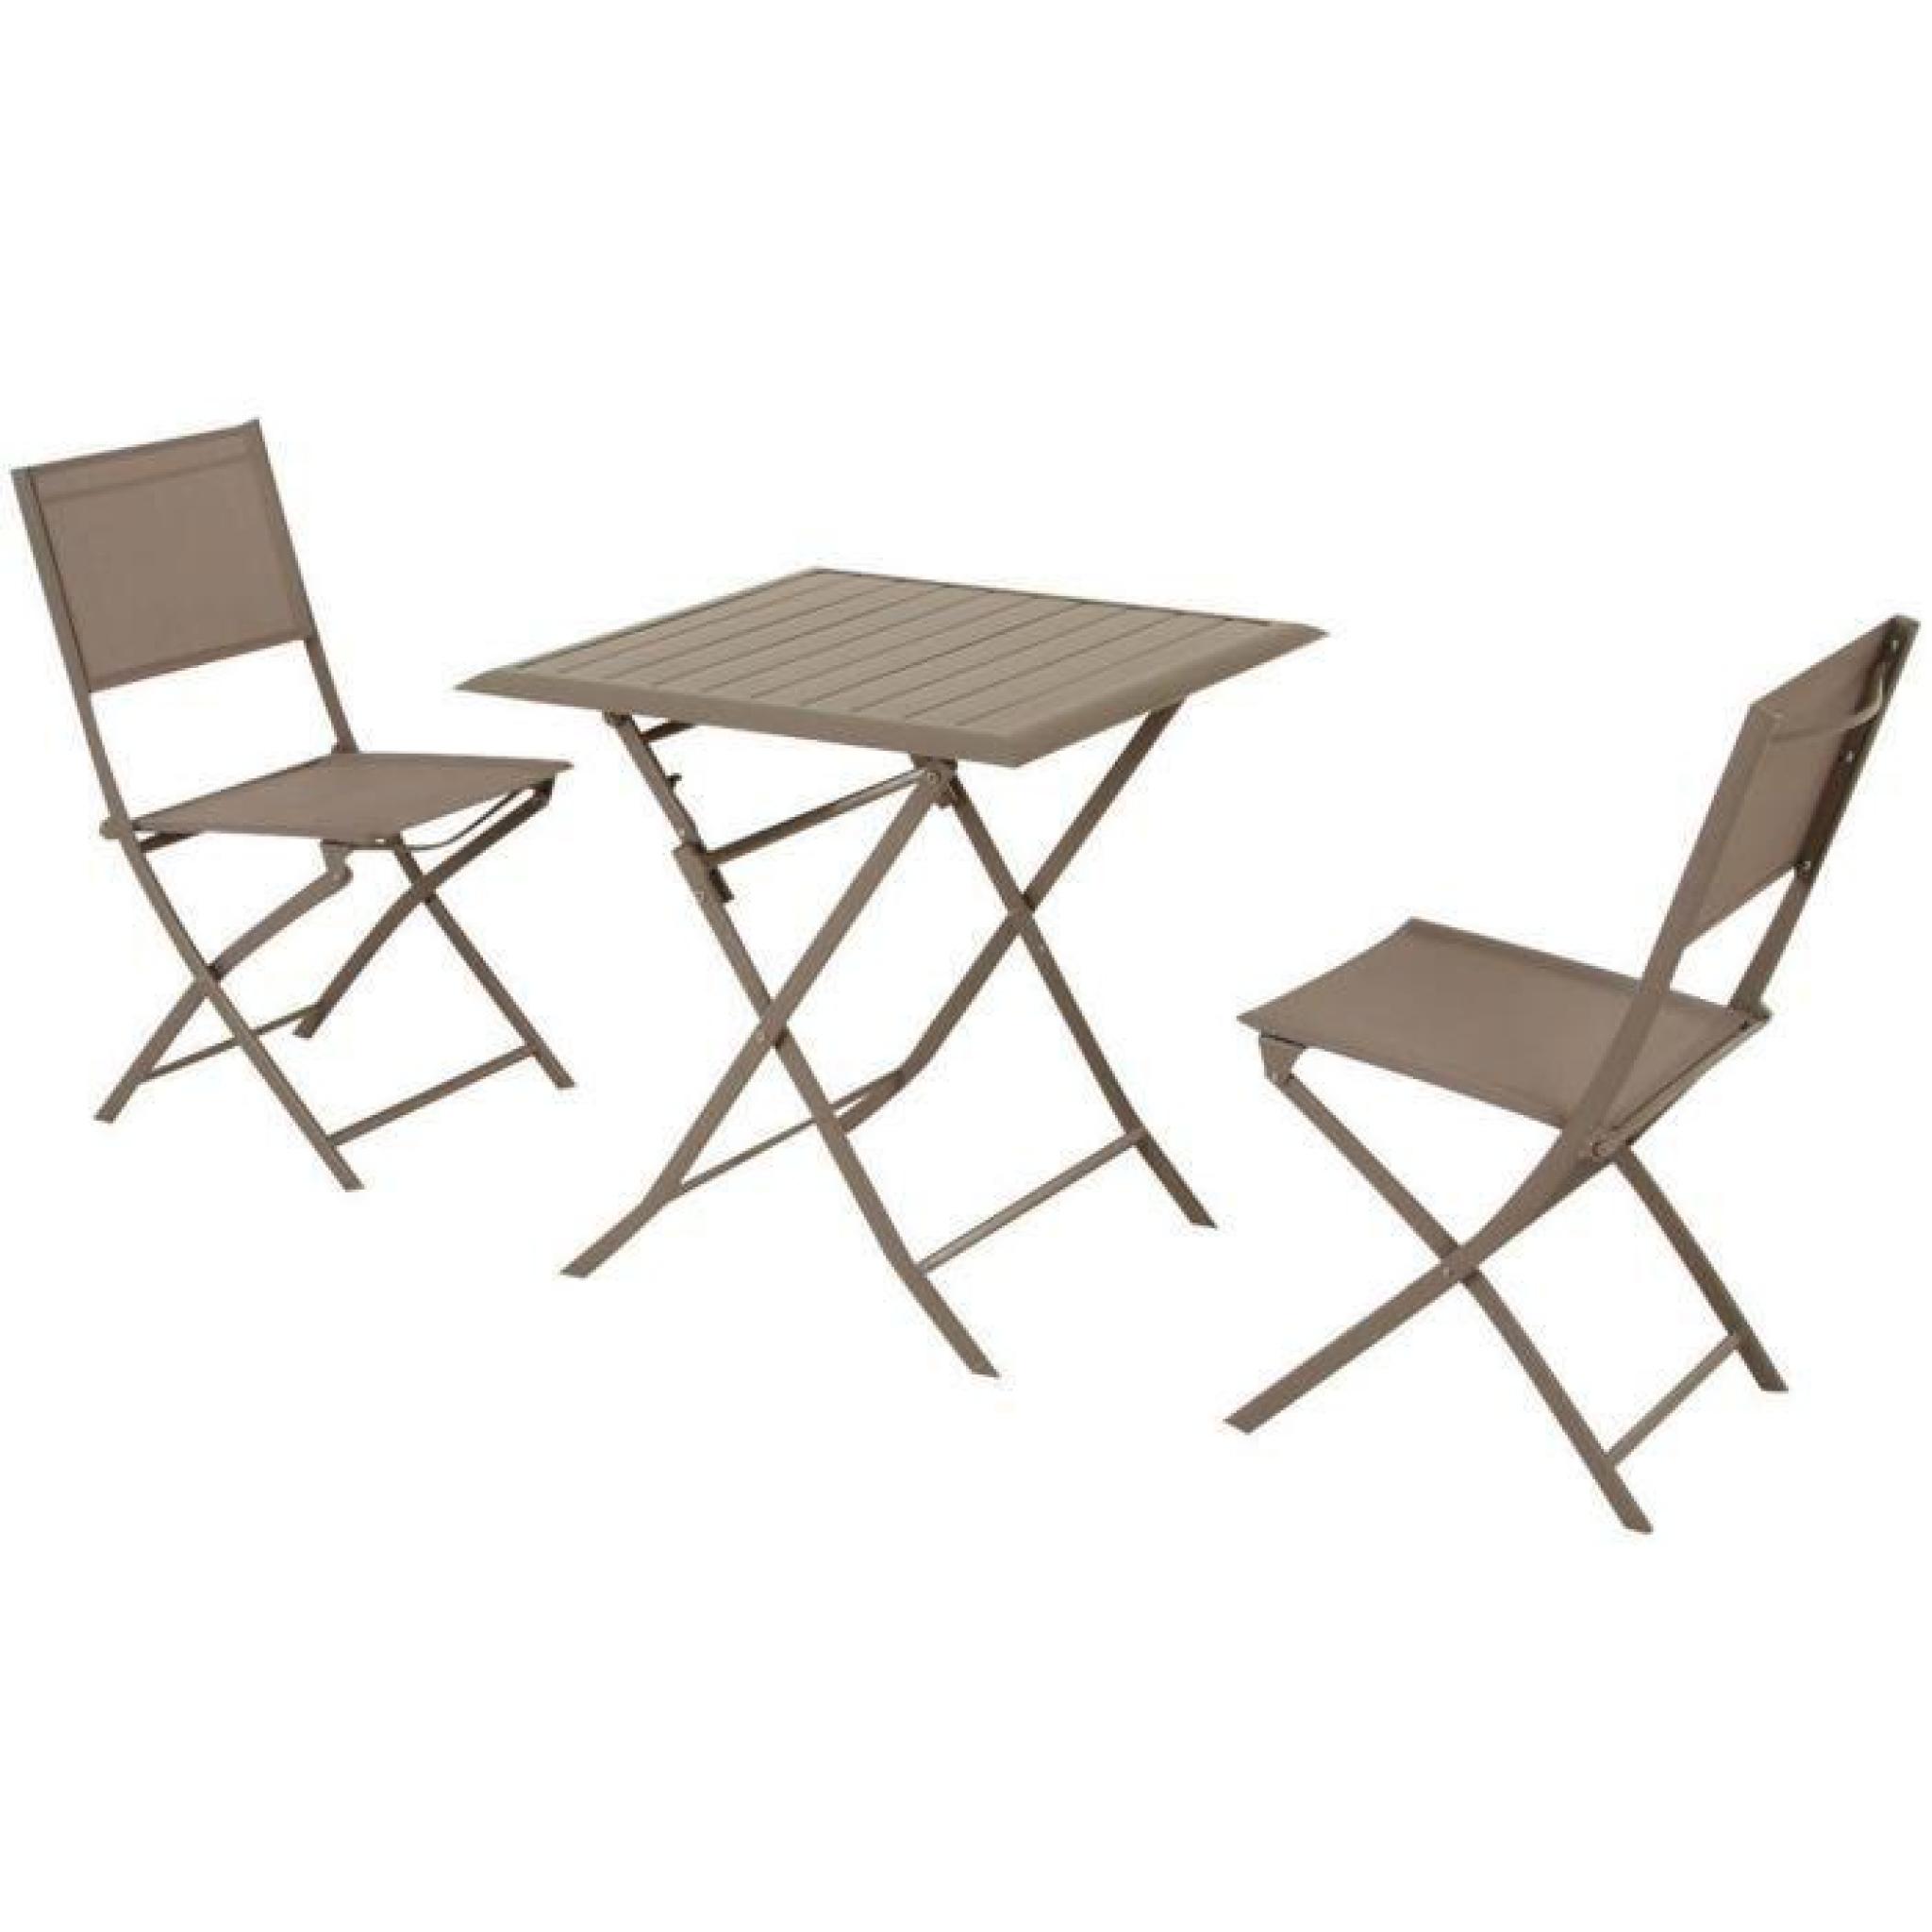 Table pliante carrée en Aluminium coloris taupe - Dim : L71cm x P71cm x H71cm  pas cher